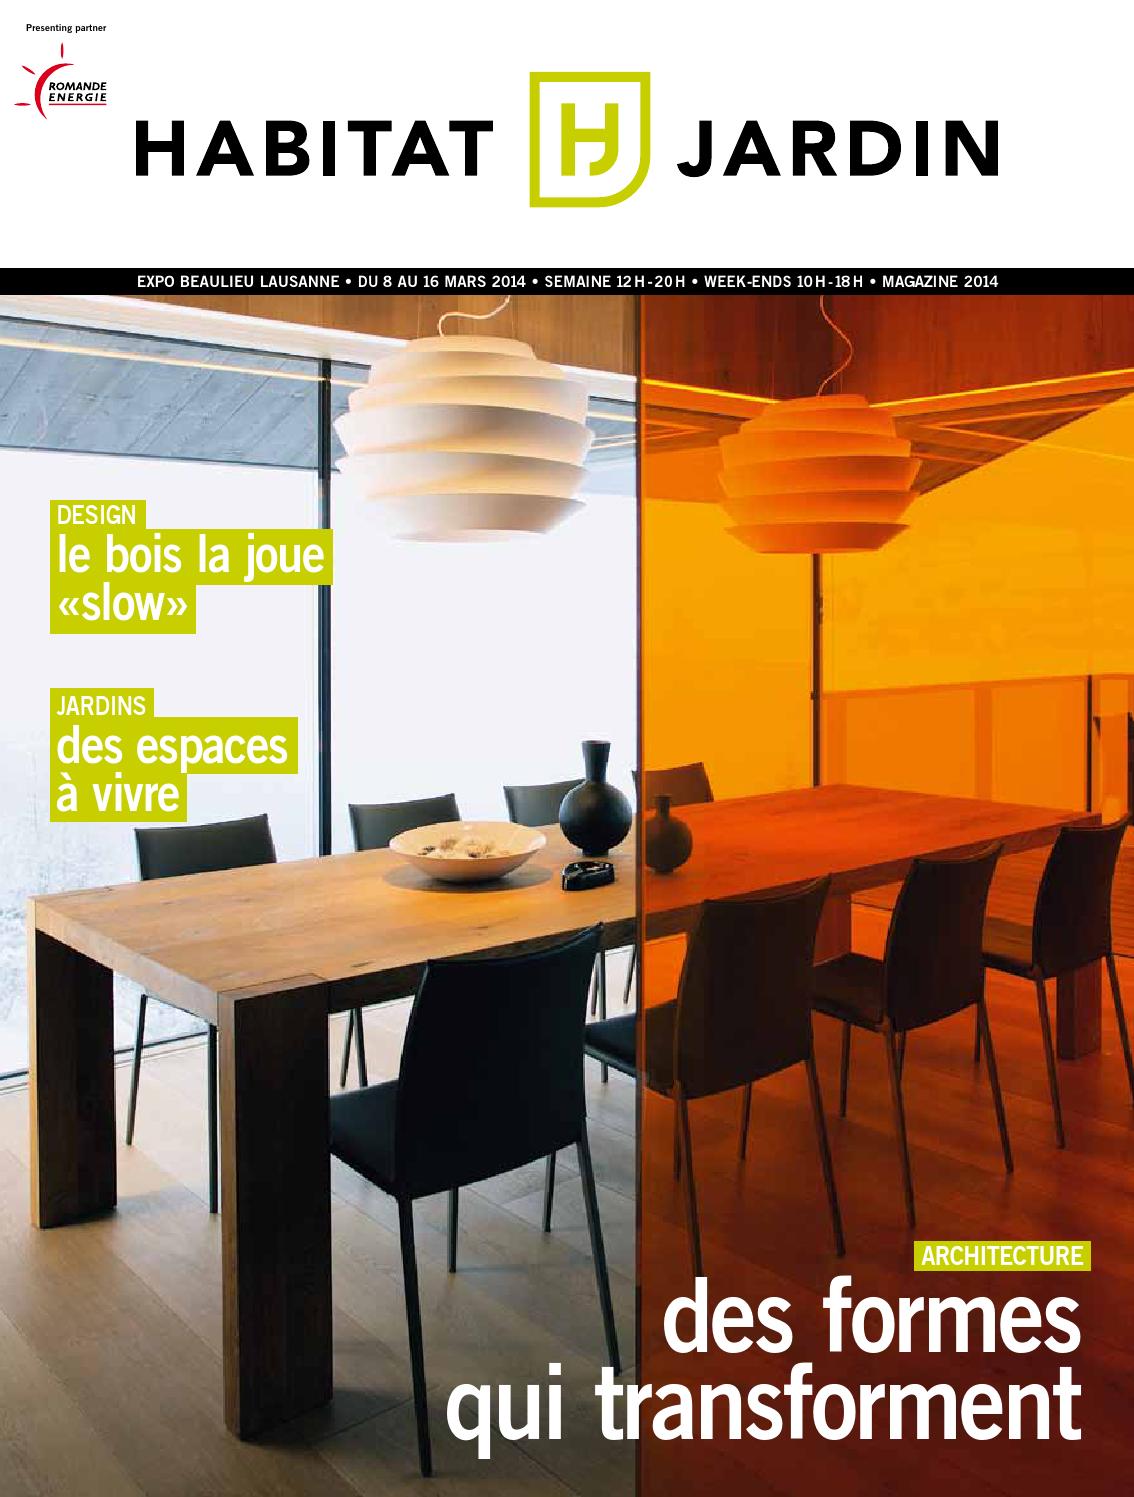 Salon De Jardin Mosaique Best Of Le Magazine Habitat Jardin by Inédit Publications Sa issuu